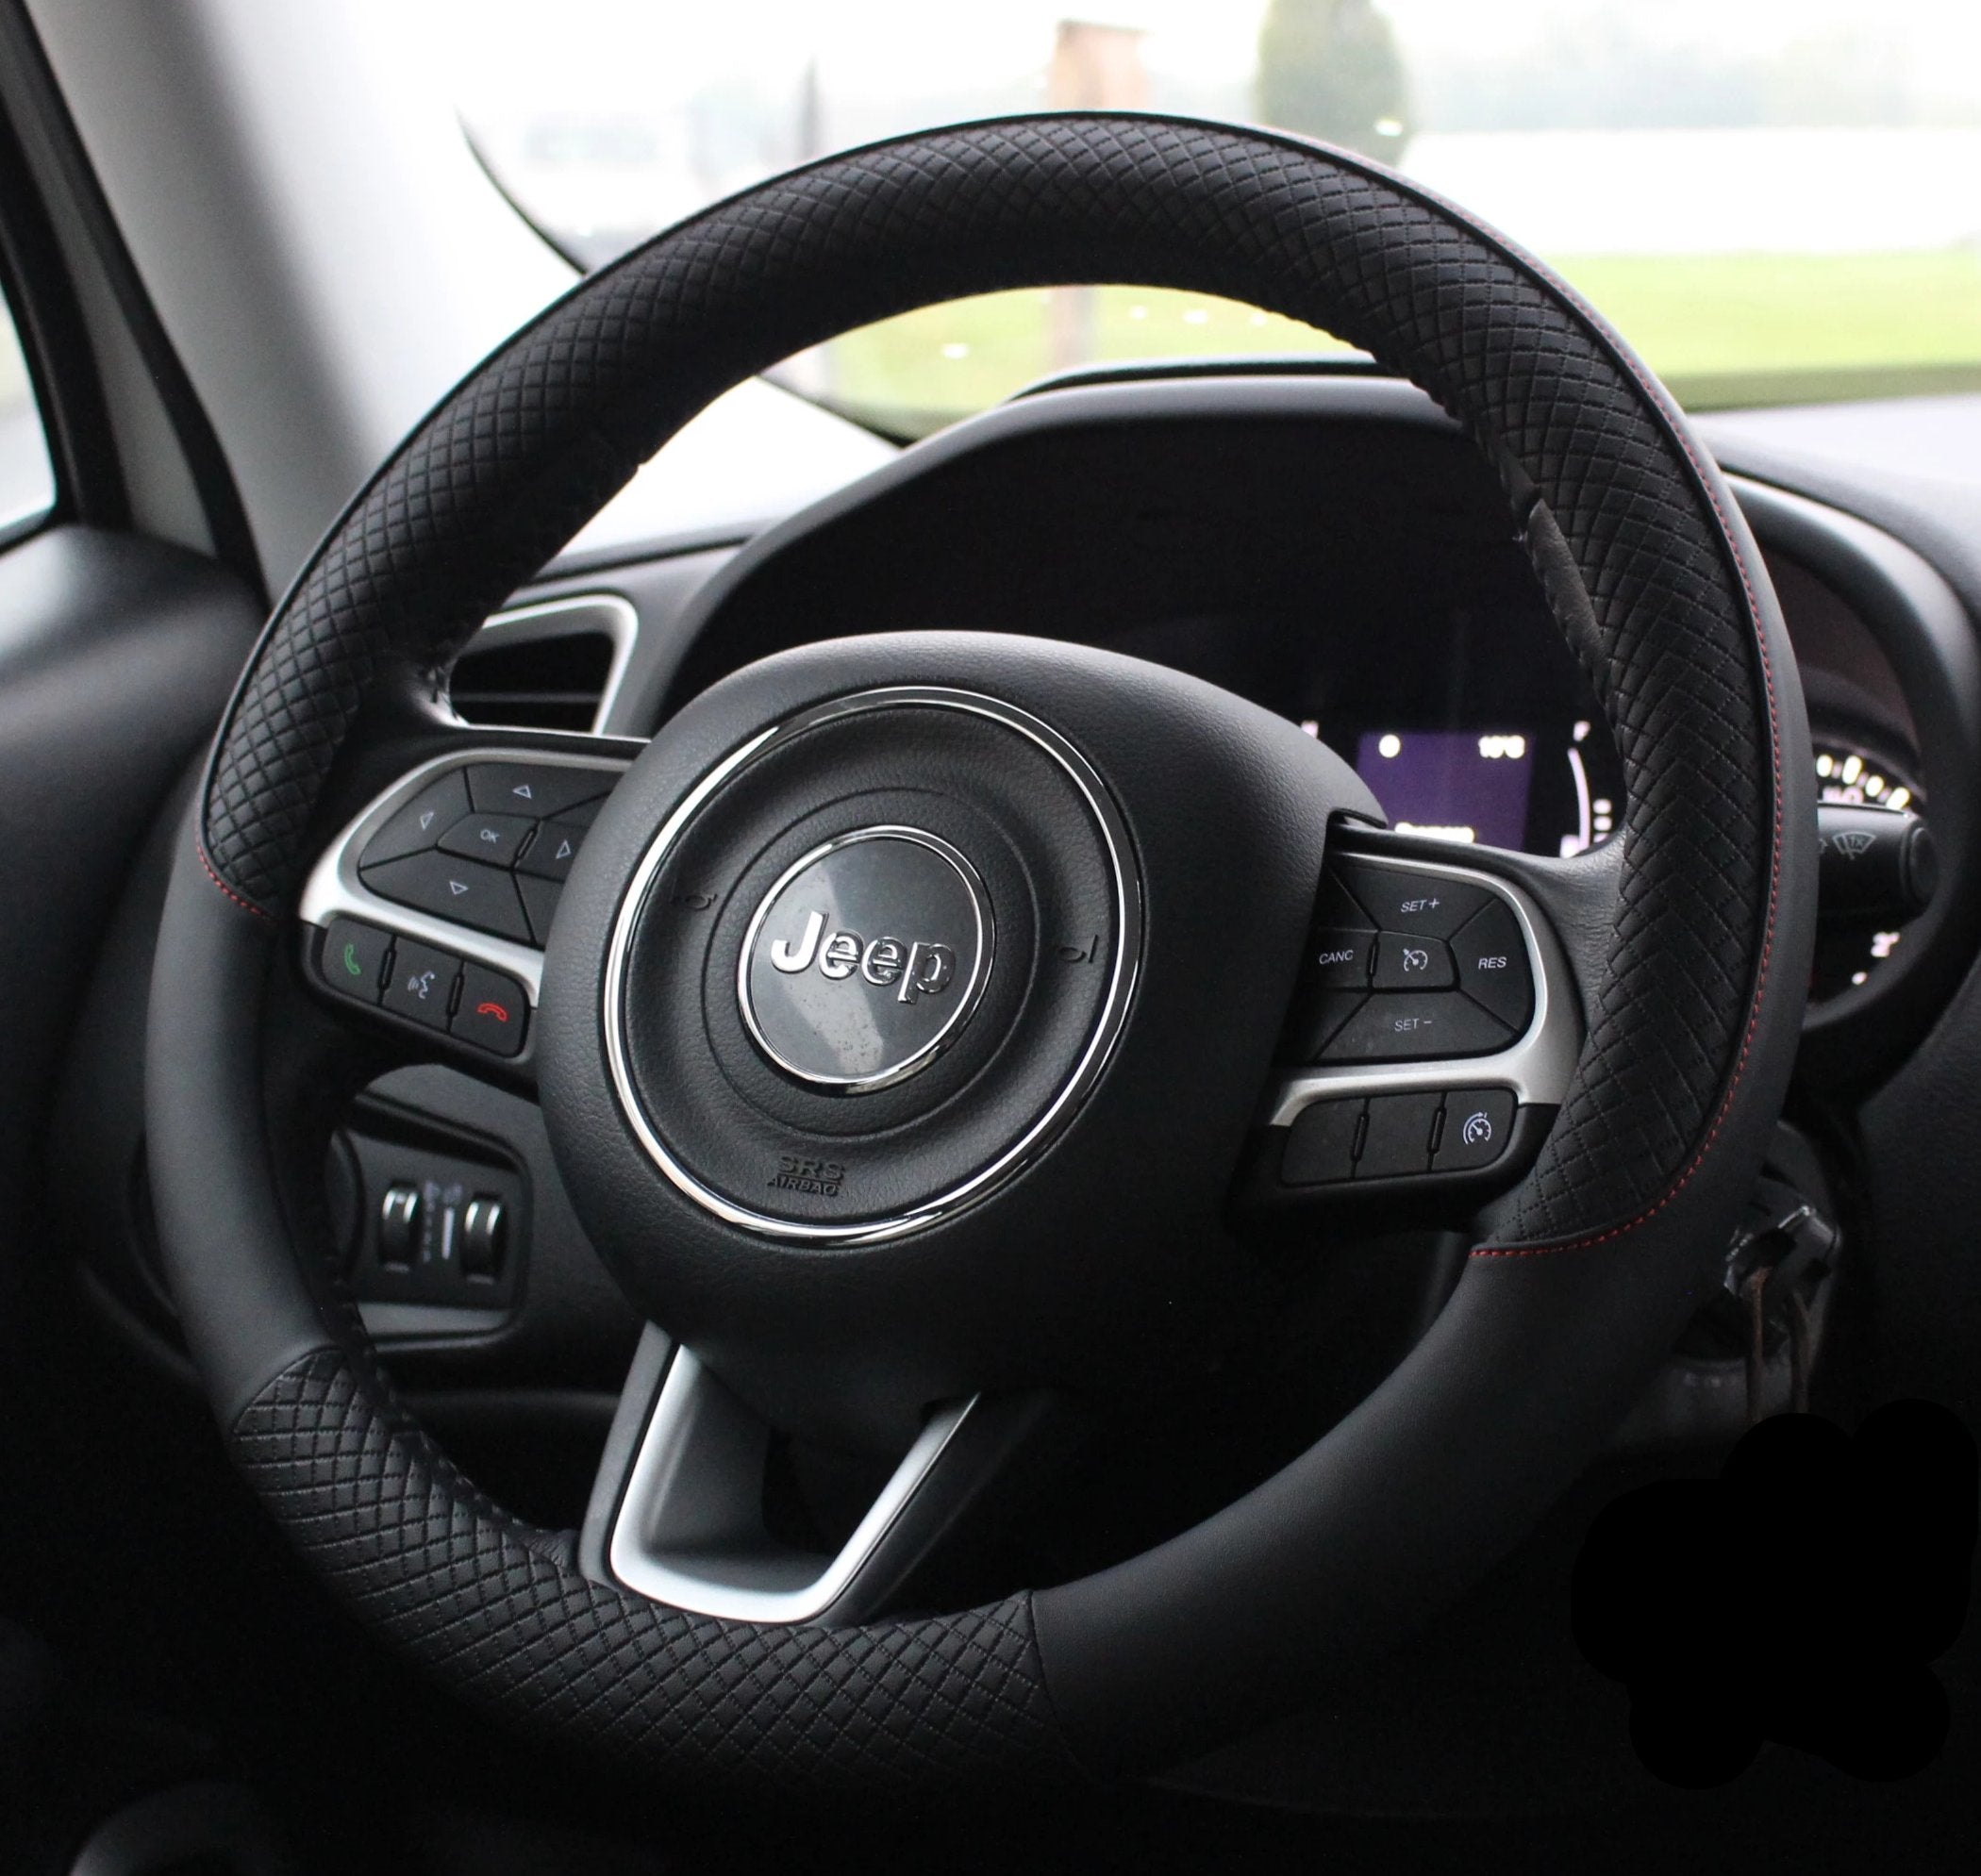 Heated Steering Wheel Cover | Car Steering Grip Cover Heated | Electric  Heated Steering Cover | 12V Steering Wheel Cover Auto Steering Wheel  Protector